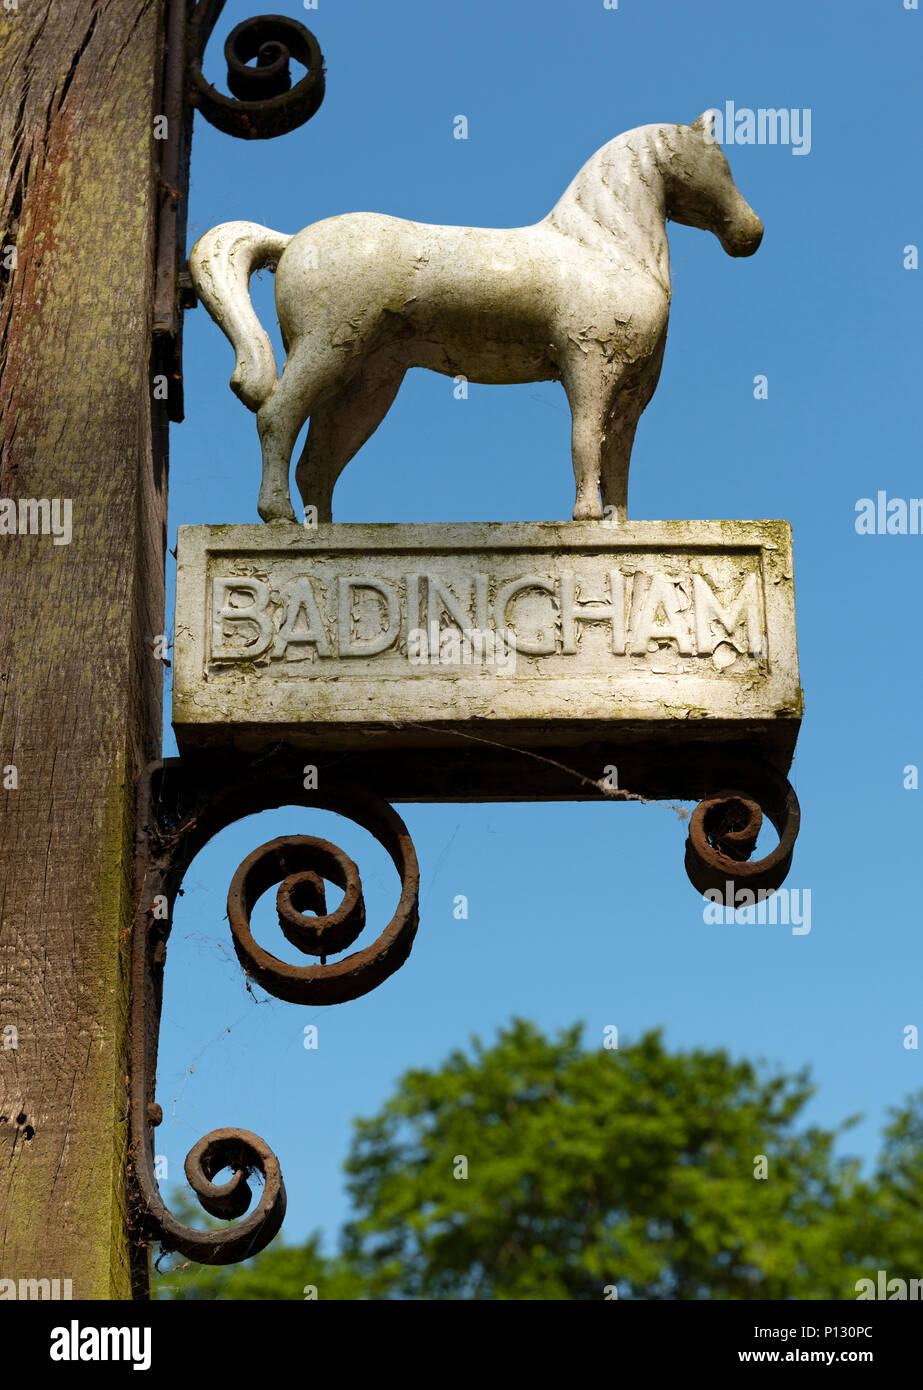 White Horse pub sign, Badingham, Suffolk, England. Stock Photo